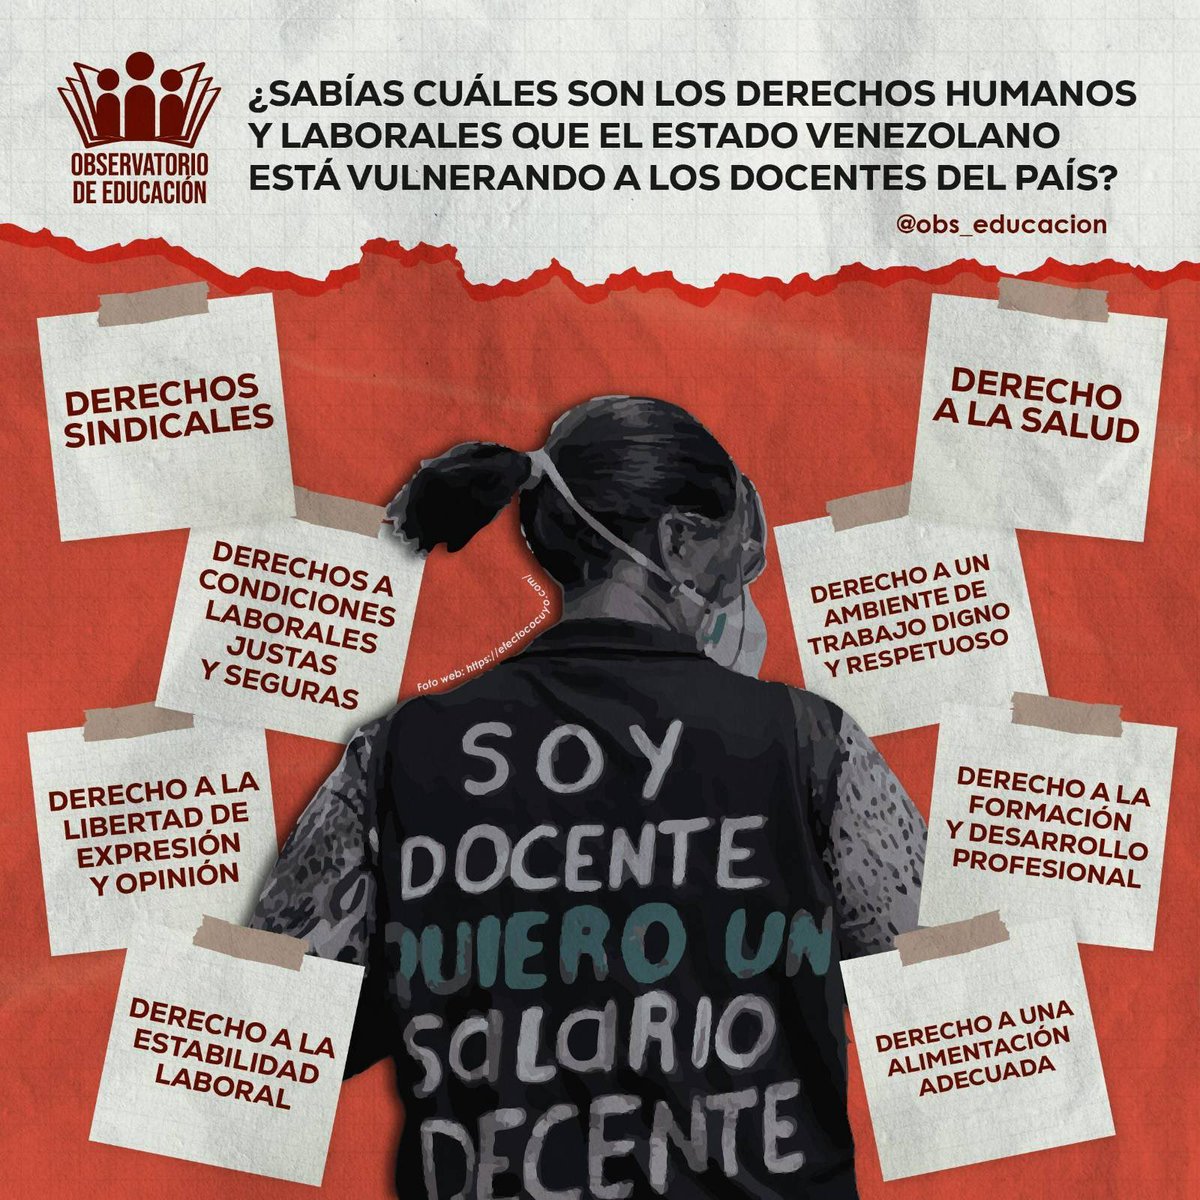 El Estado venezolano ha fallado en hacer valer los derechos de los docentes, quienes hoy en día enfrentan una precariedad alarmante en sus condiciones laborales, afectando su sistema de vida y el de su familia.